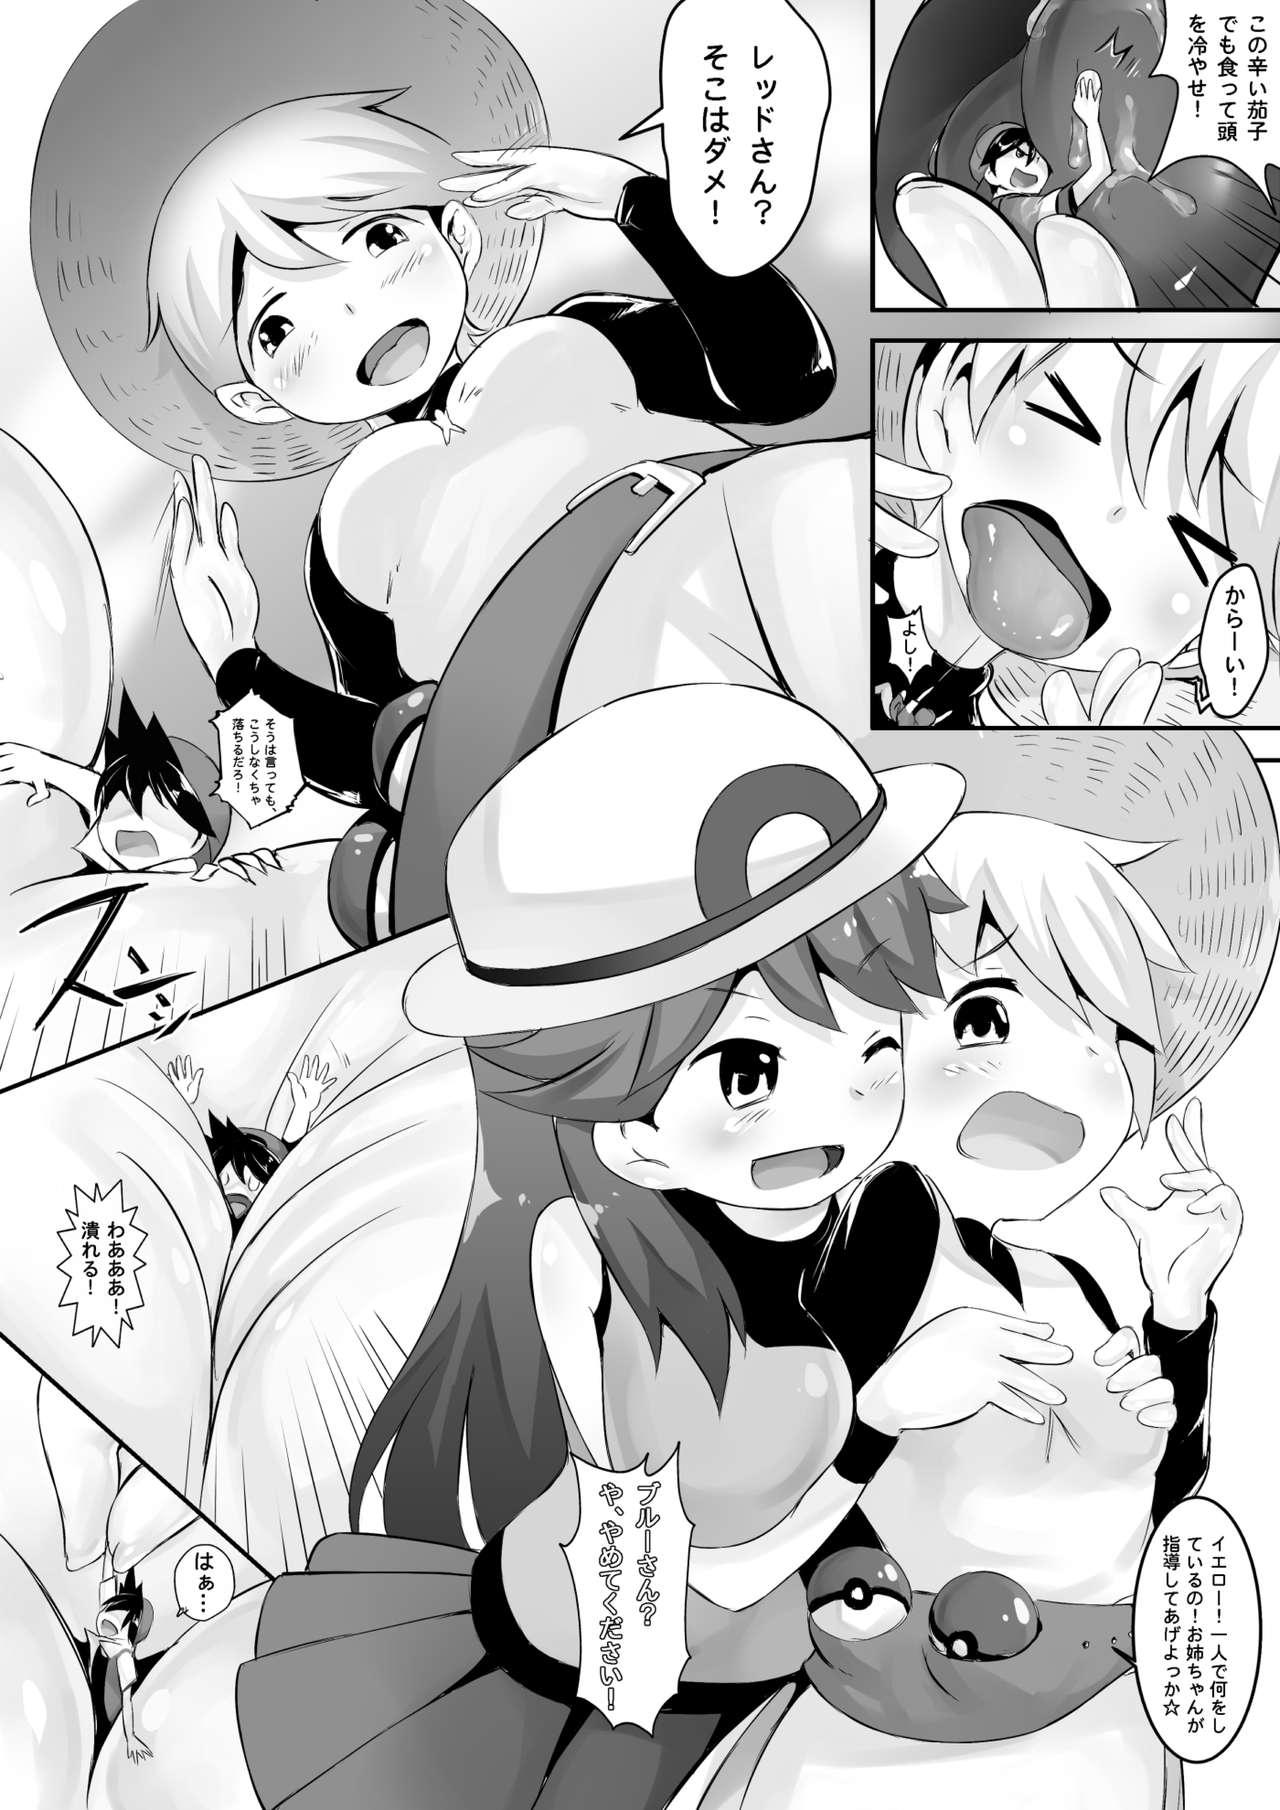 Hot Blow Jobs Pokemon GS Friend?! - Pokemon Sis - Page 8